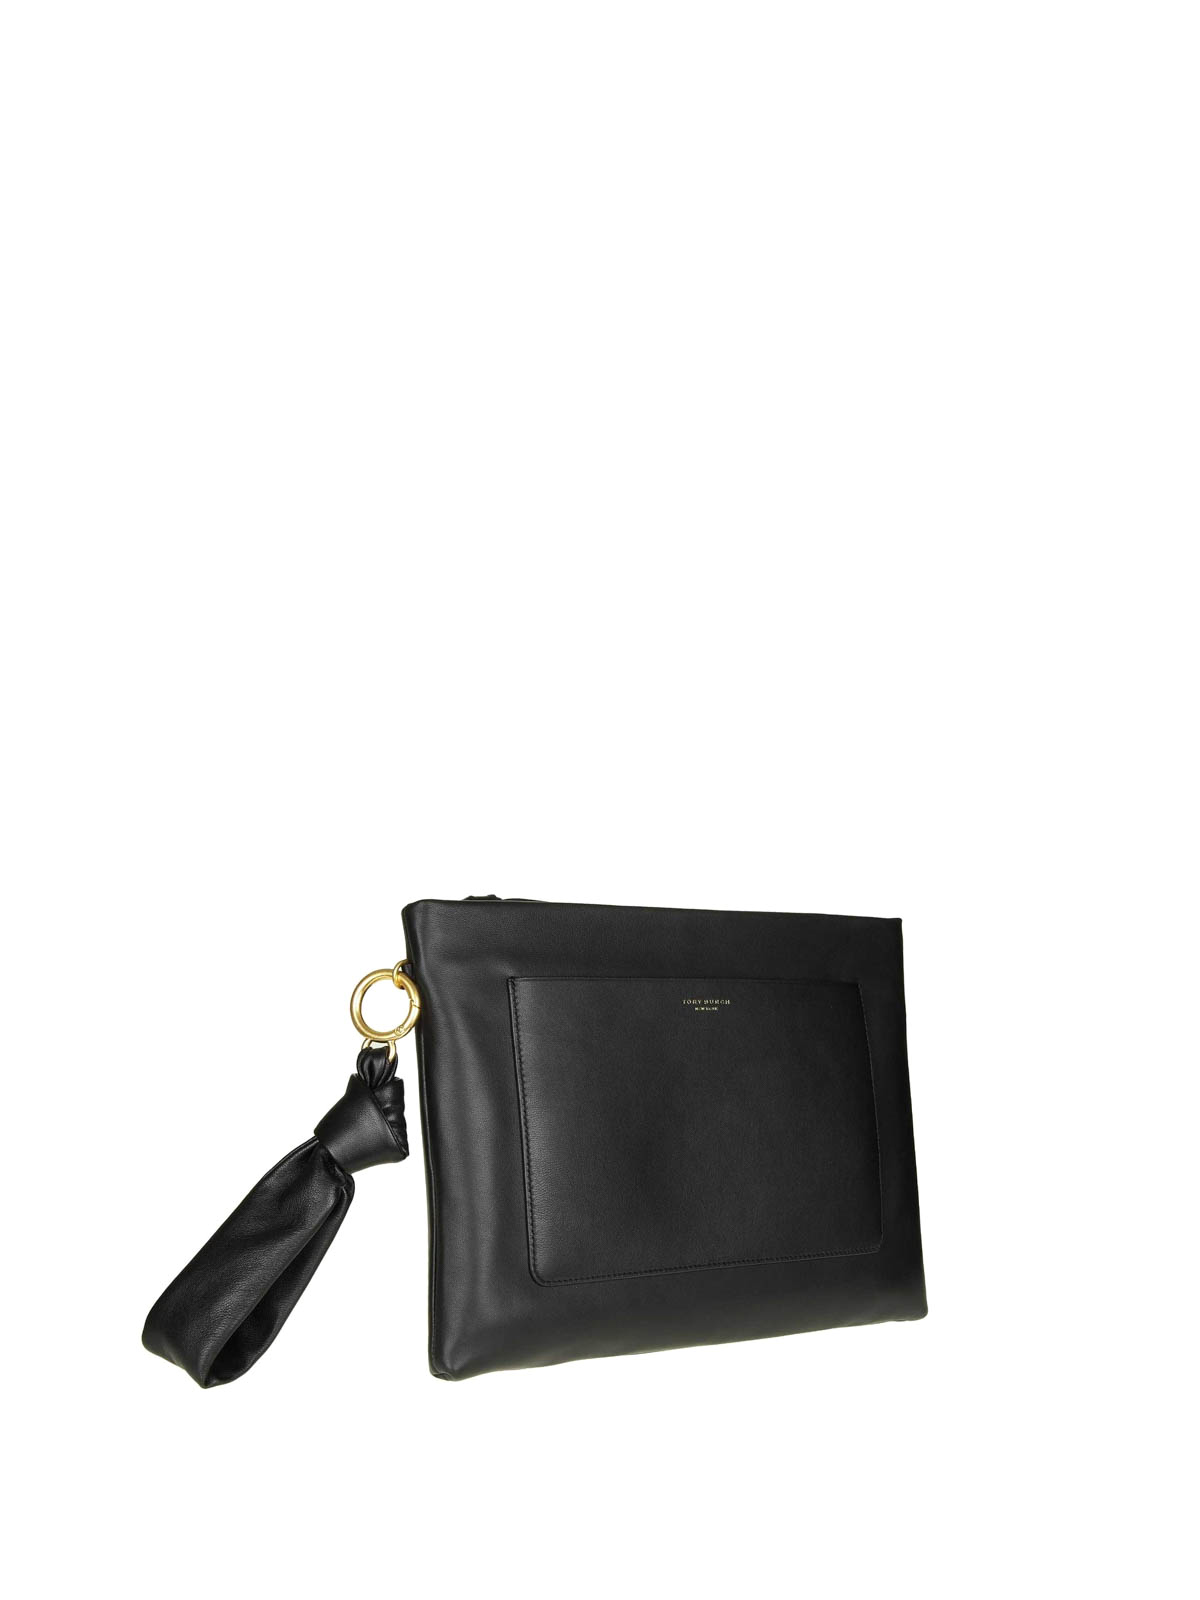 Clutches Tory Burch - Beau black leather clutch - 51117001 